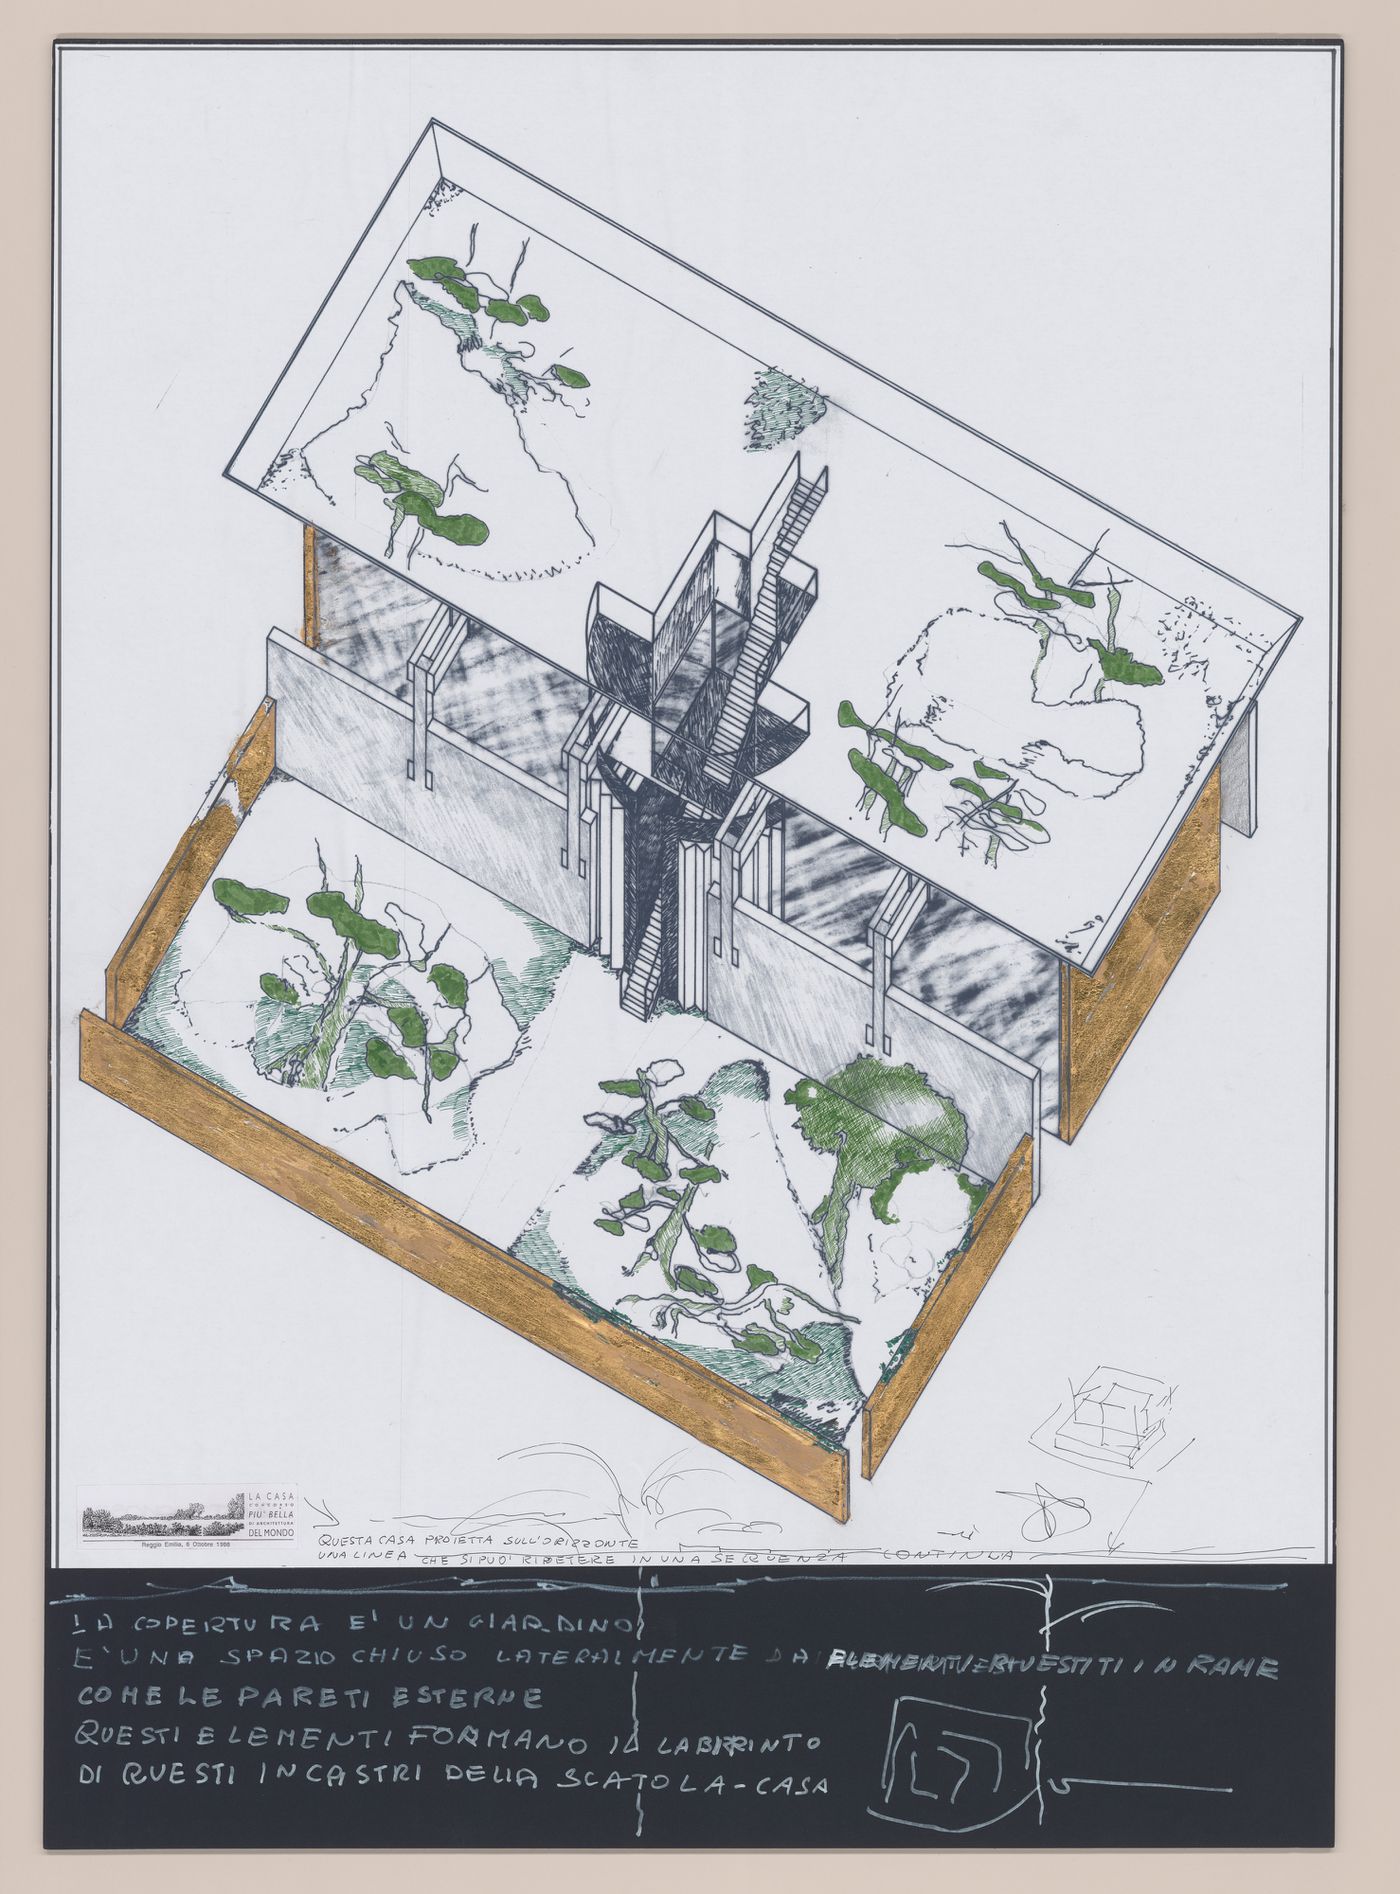 Presentation drawings for La casa più bella di architettura del mondo [The most beautiful house in the world]